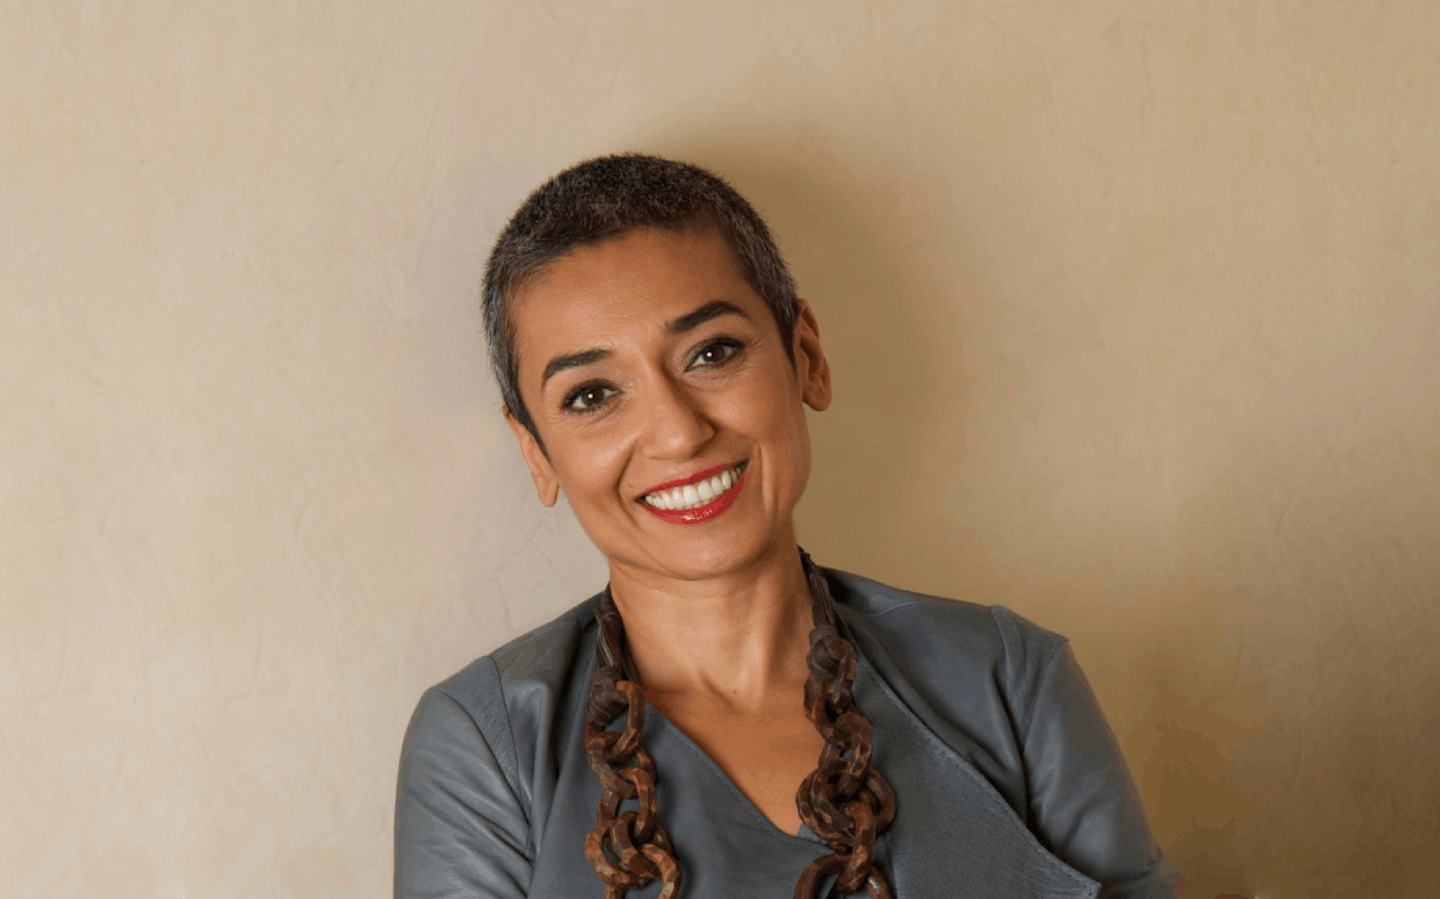 Environmental Hero: Zainab Salbi